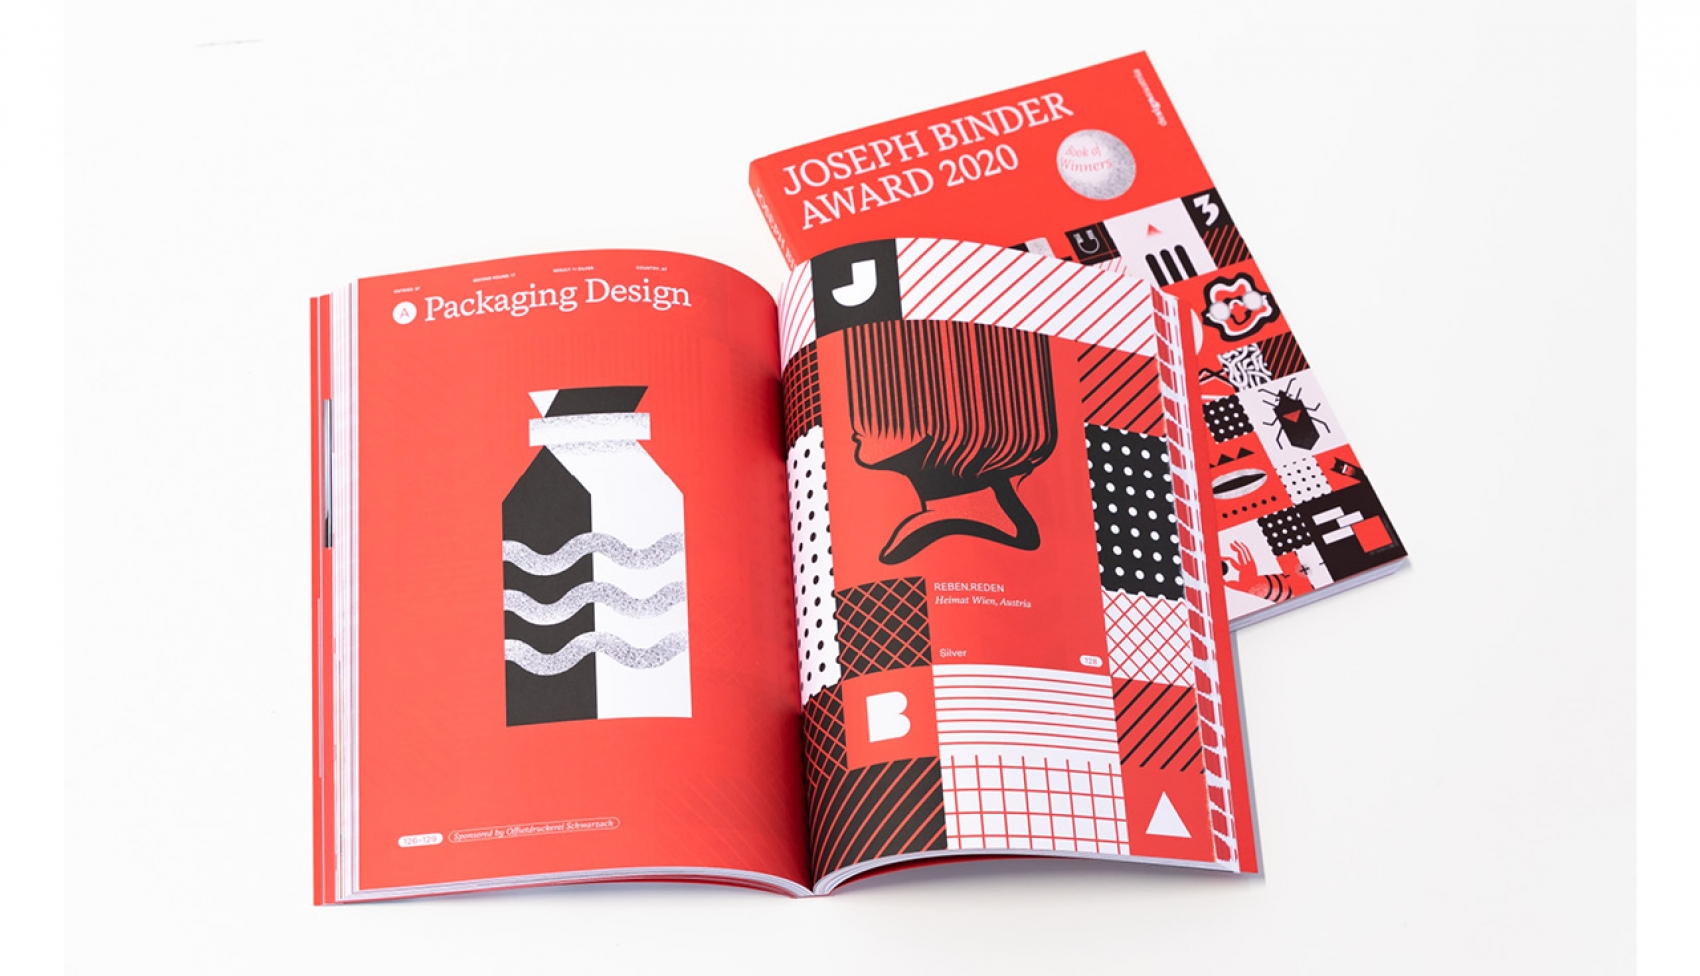 Joseph Binder Award 2020 Corporate Design